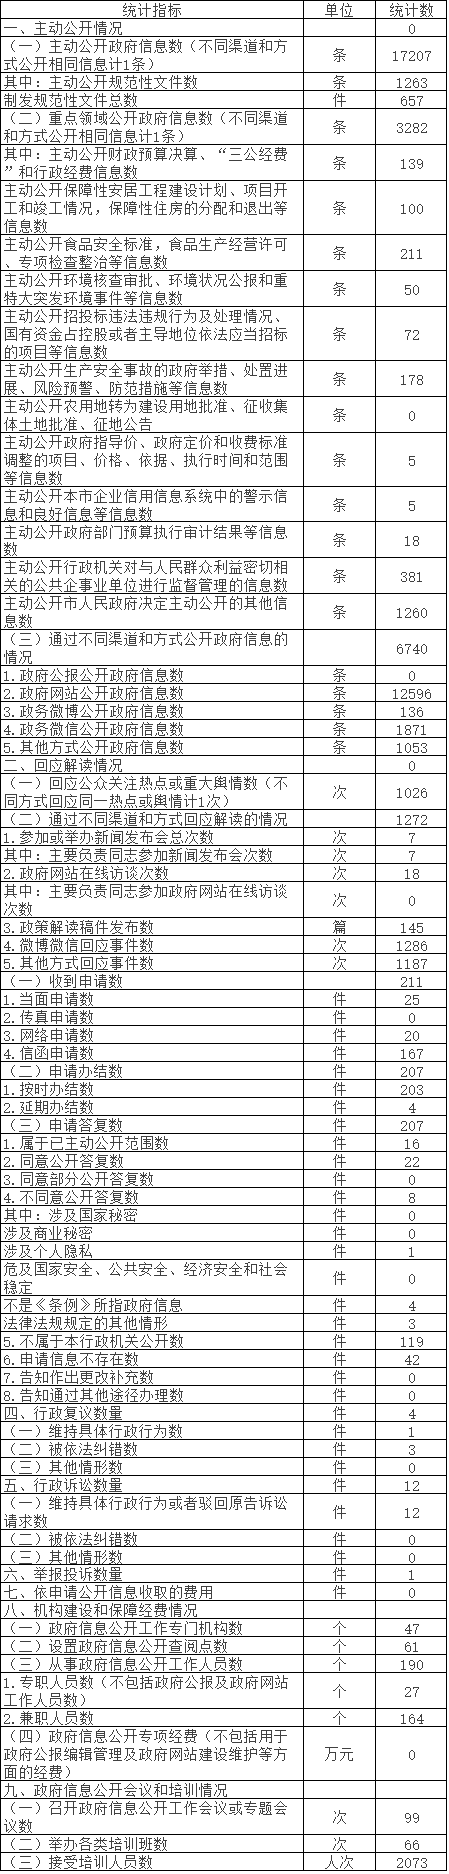 北京市延庆区人民政府政府信息公开情况统计表(2017年度)